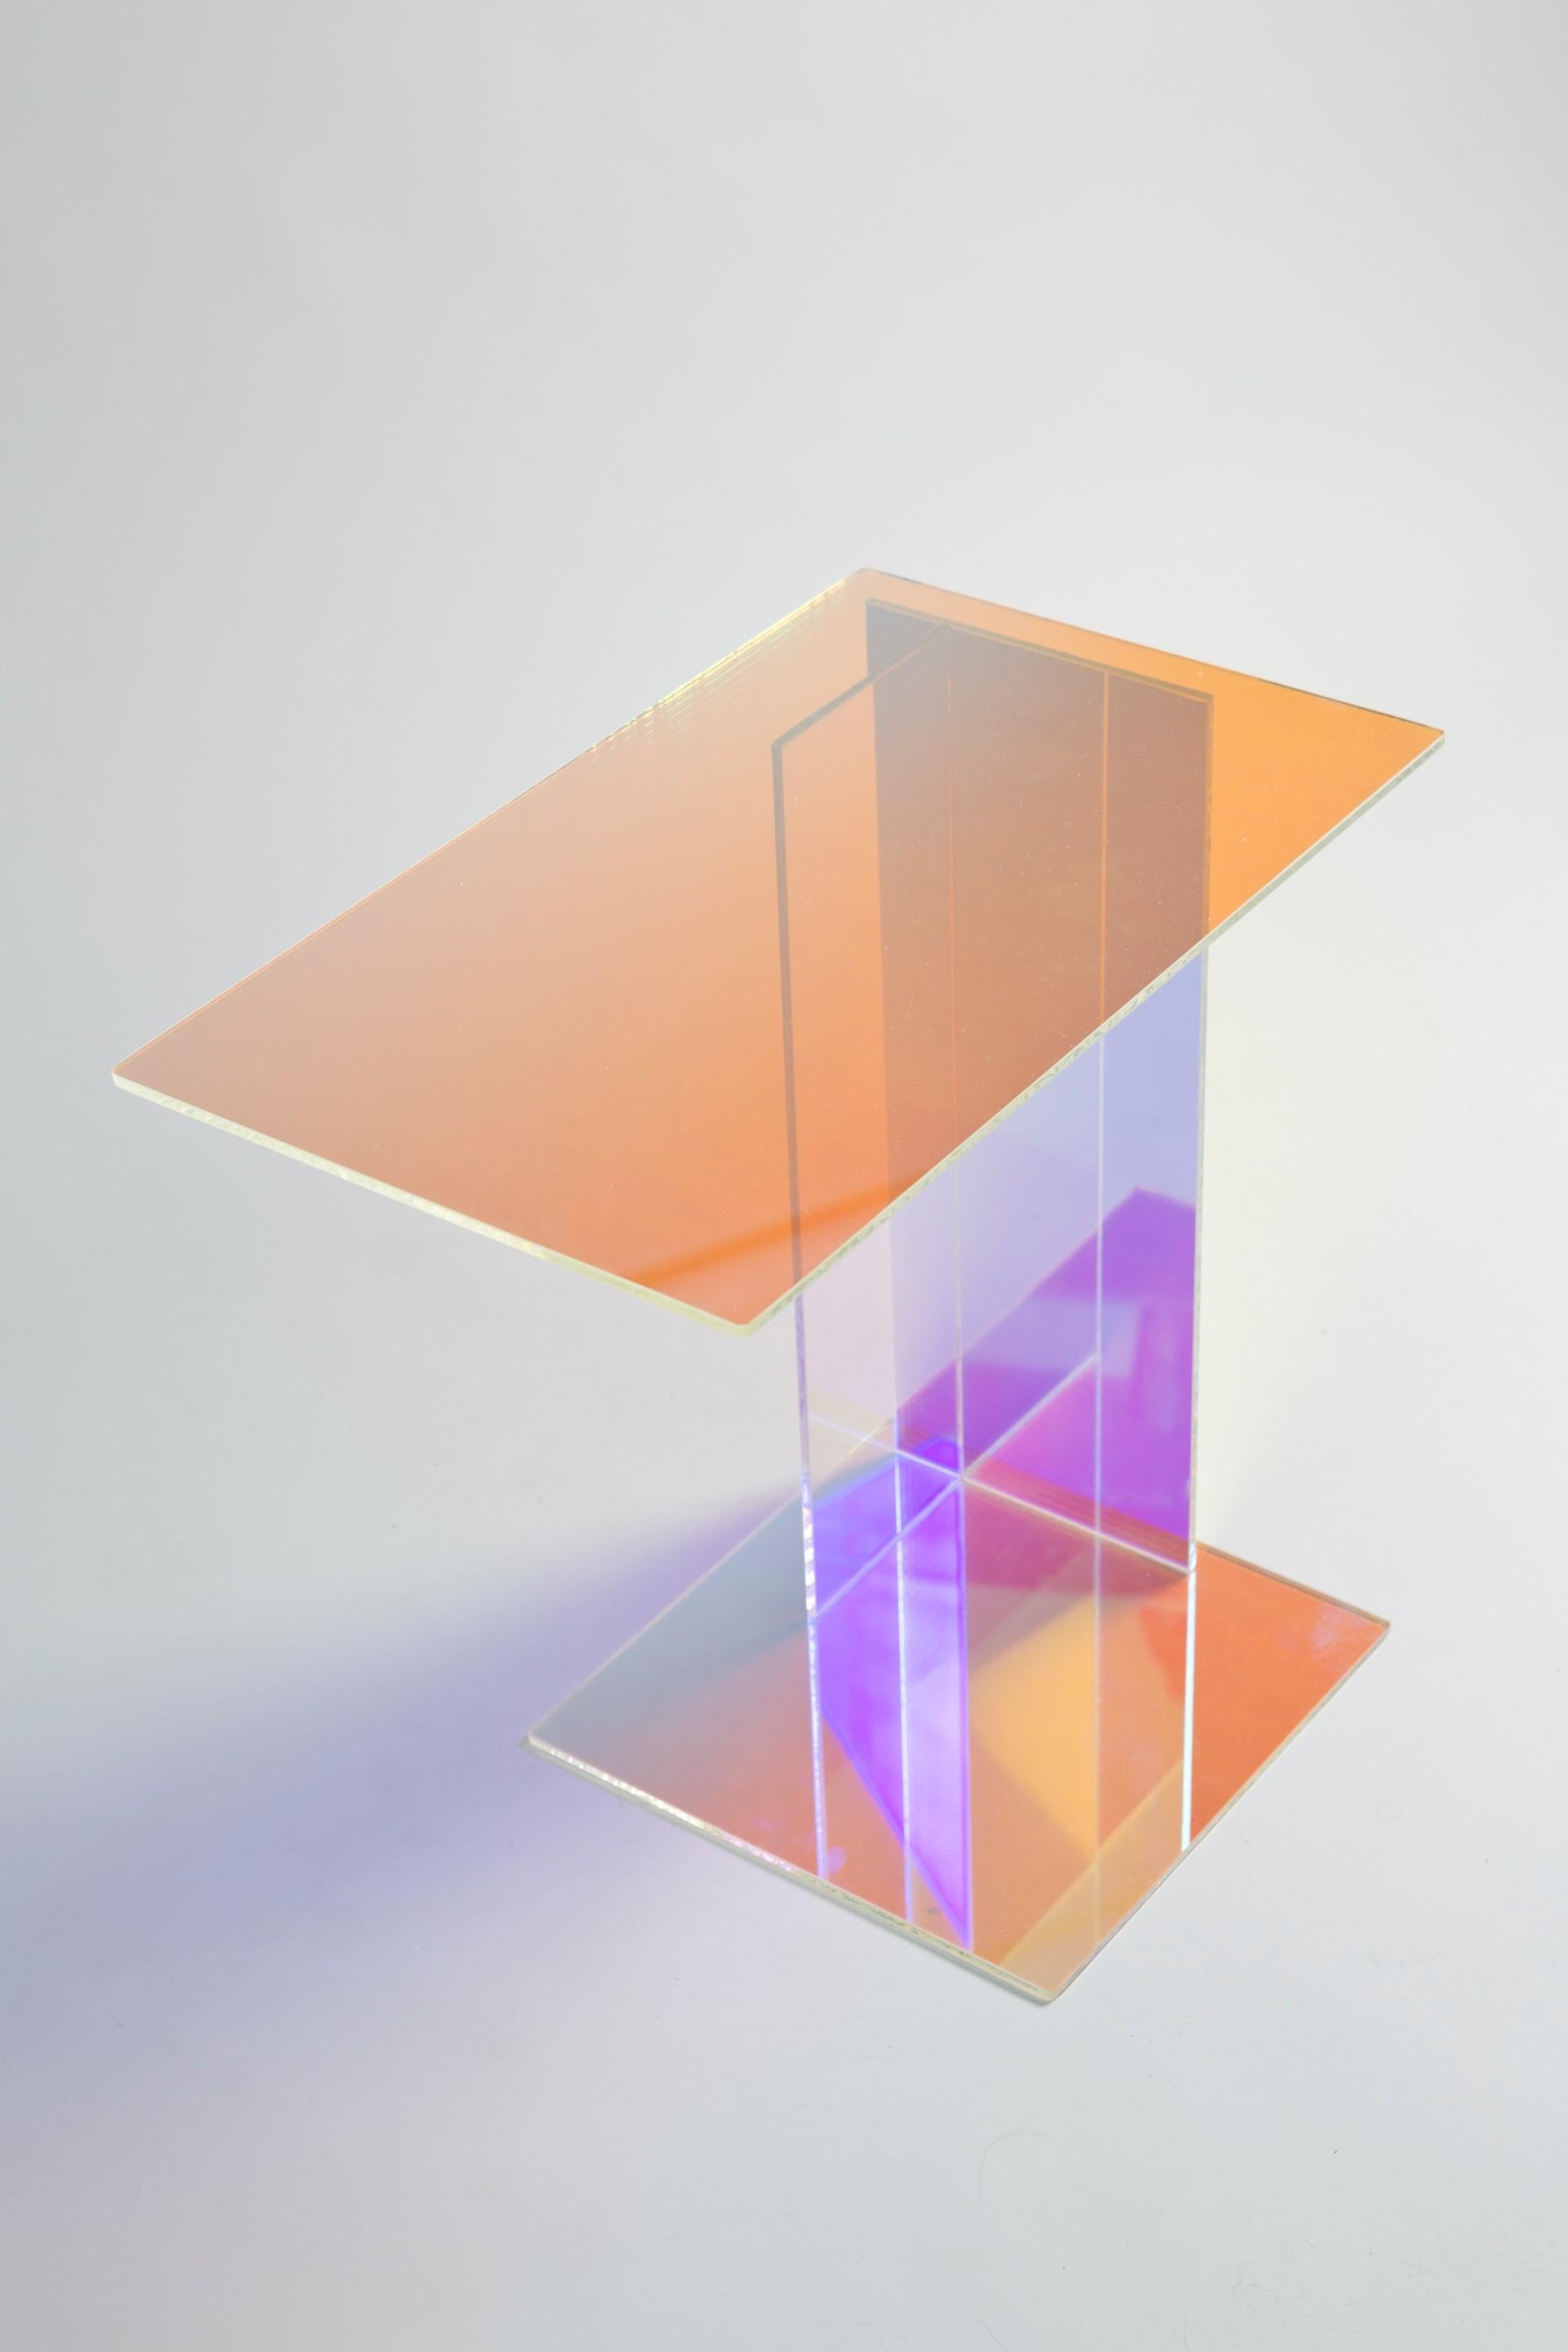 Table d'appoint dichroïque, Rona Koblenz
49 x 50 x 30 cm

